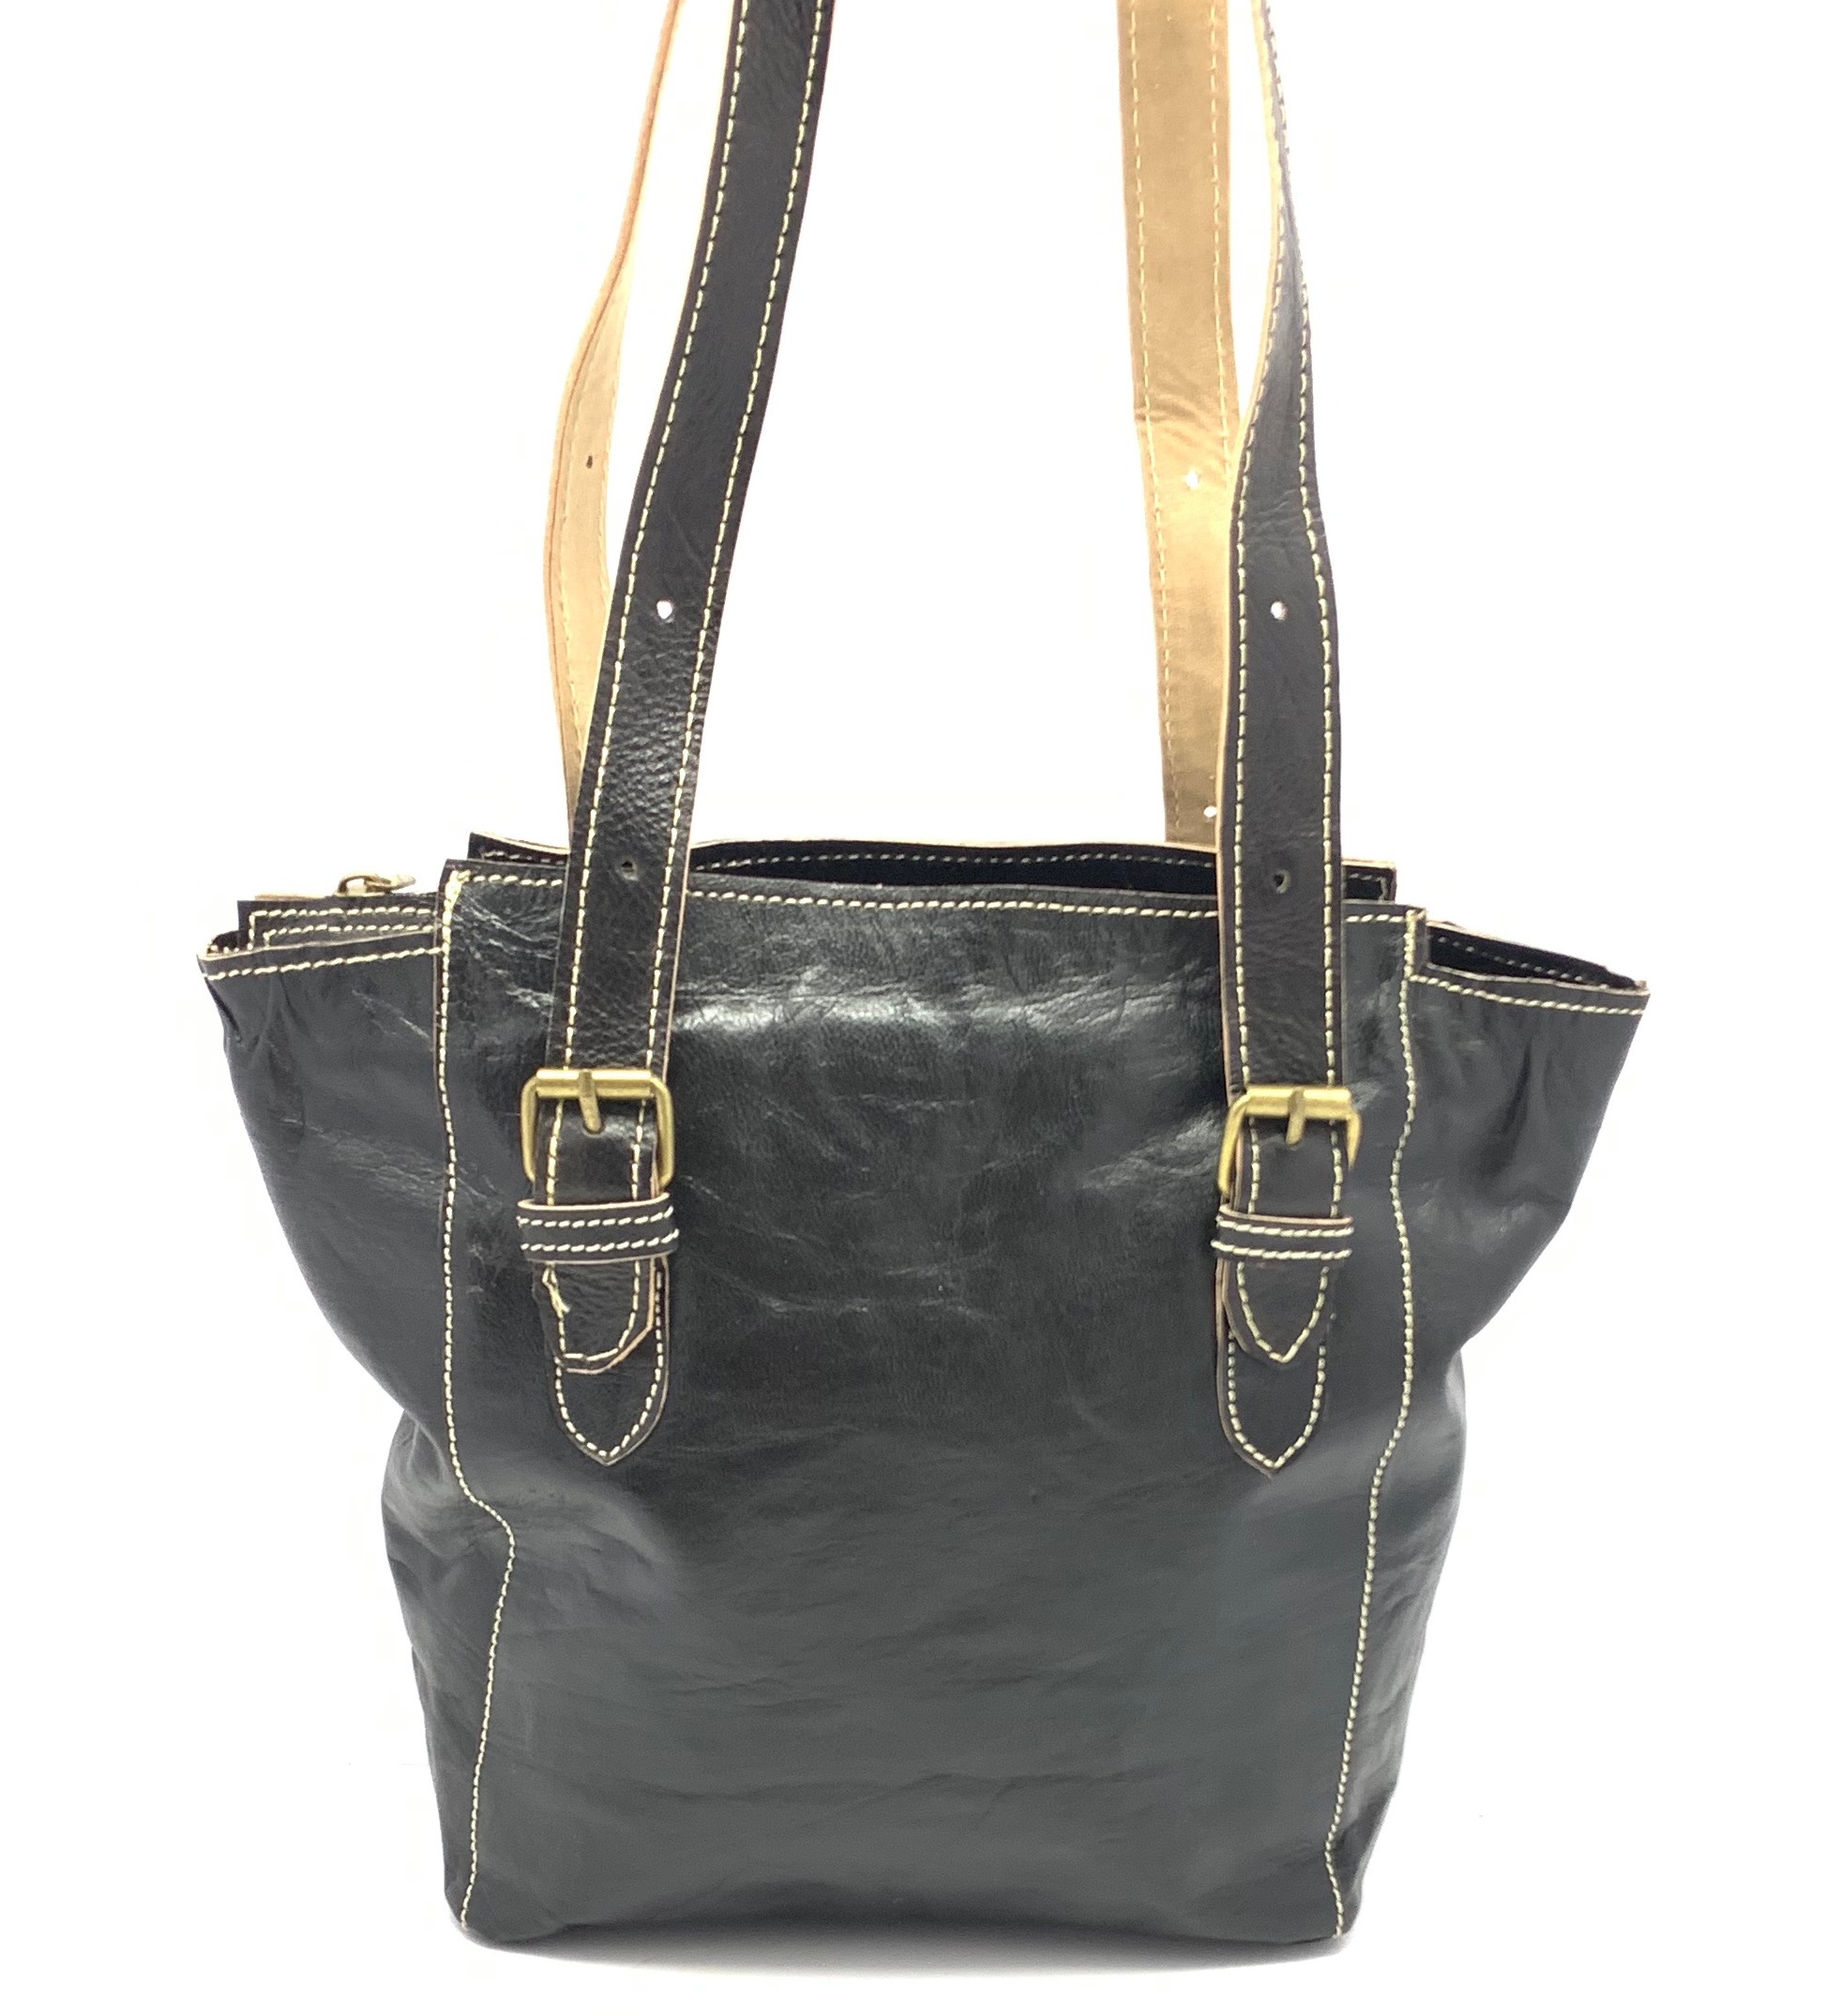 Dámská kožená kabelka s přezkami černá MagBag